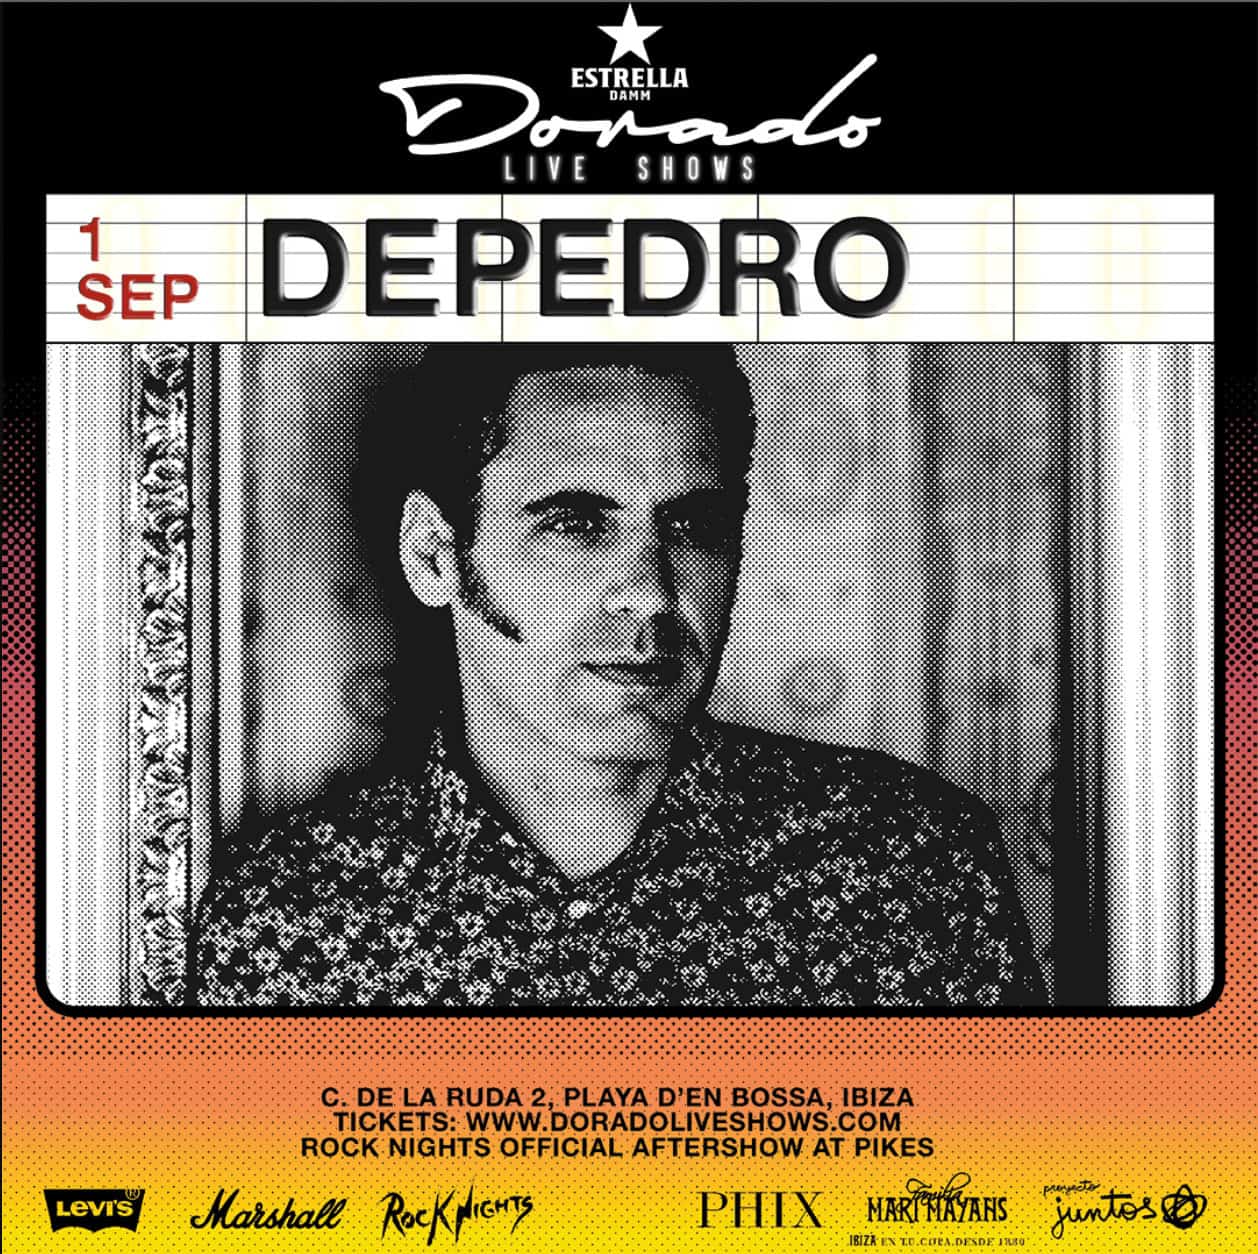 Depedro en los Dorado Live Shows en Santos Ibiza Ibiza